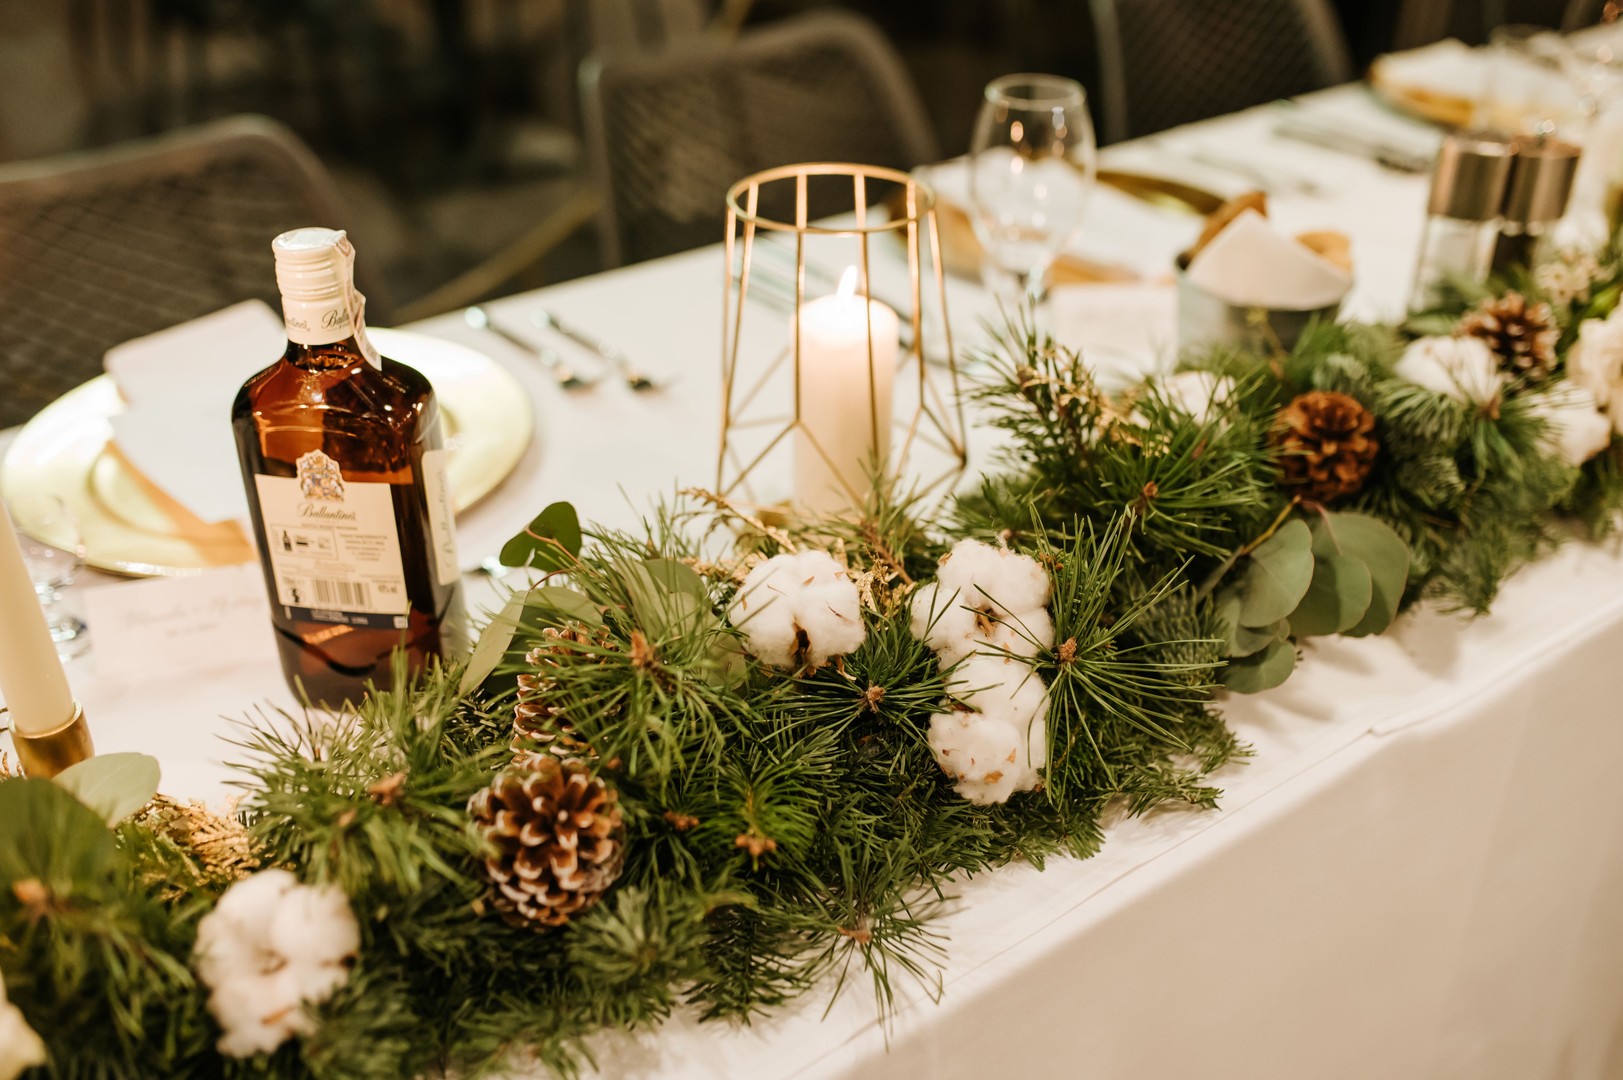 Dekoracja stołu prezydialnego na ślub zimowy z szyszkami oraz bawełną. W tle złoty lampion ze świecą